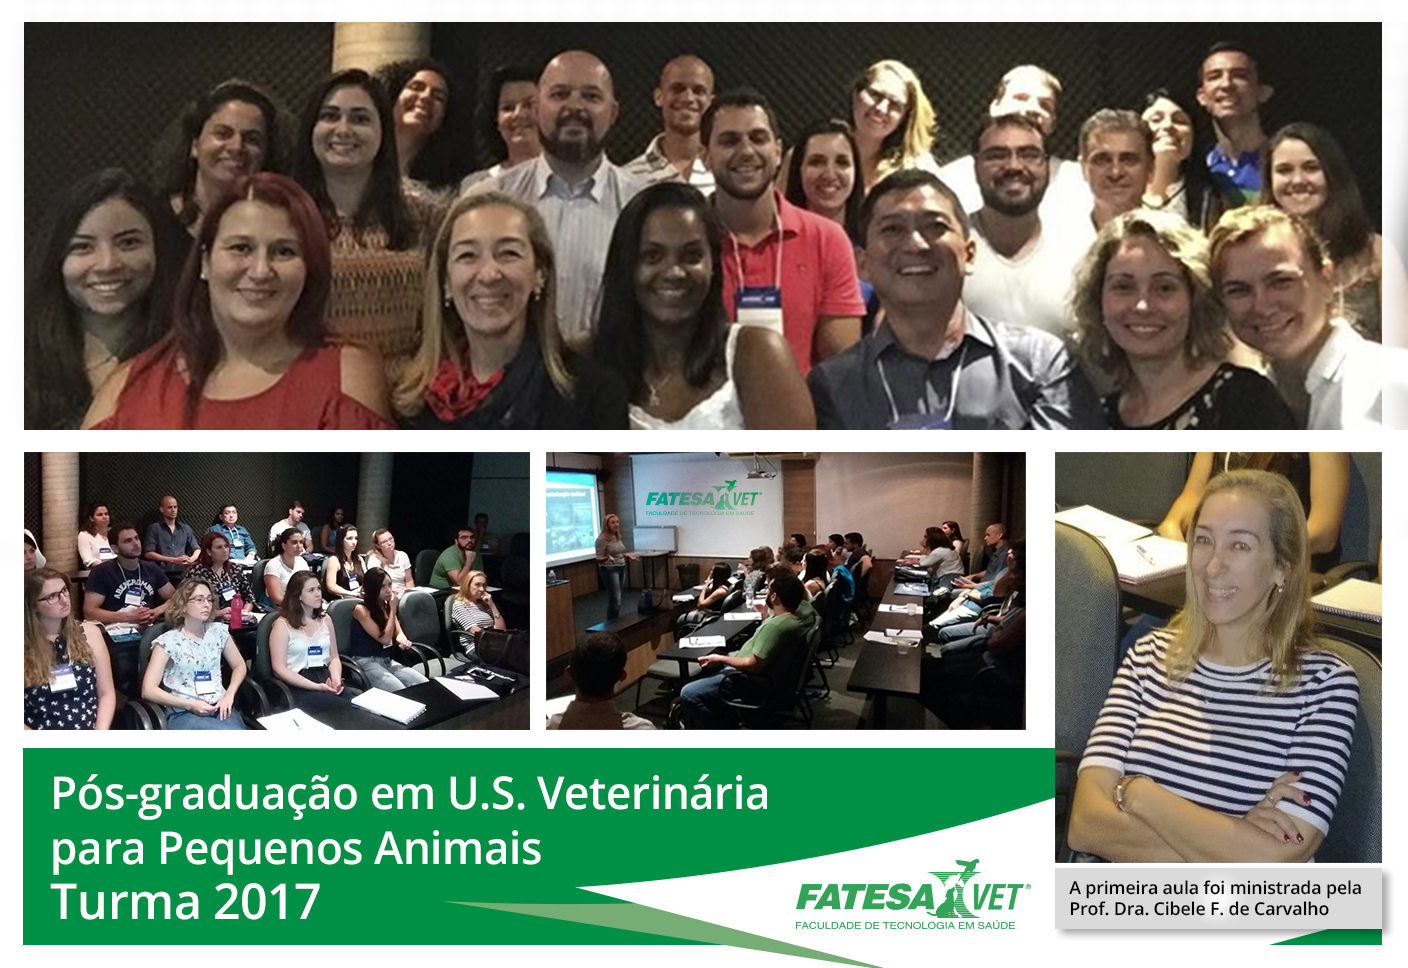 Pós-graduação em US Veterinária para Pequenos Animais! | Fatesa